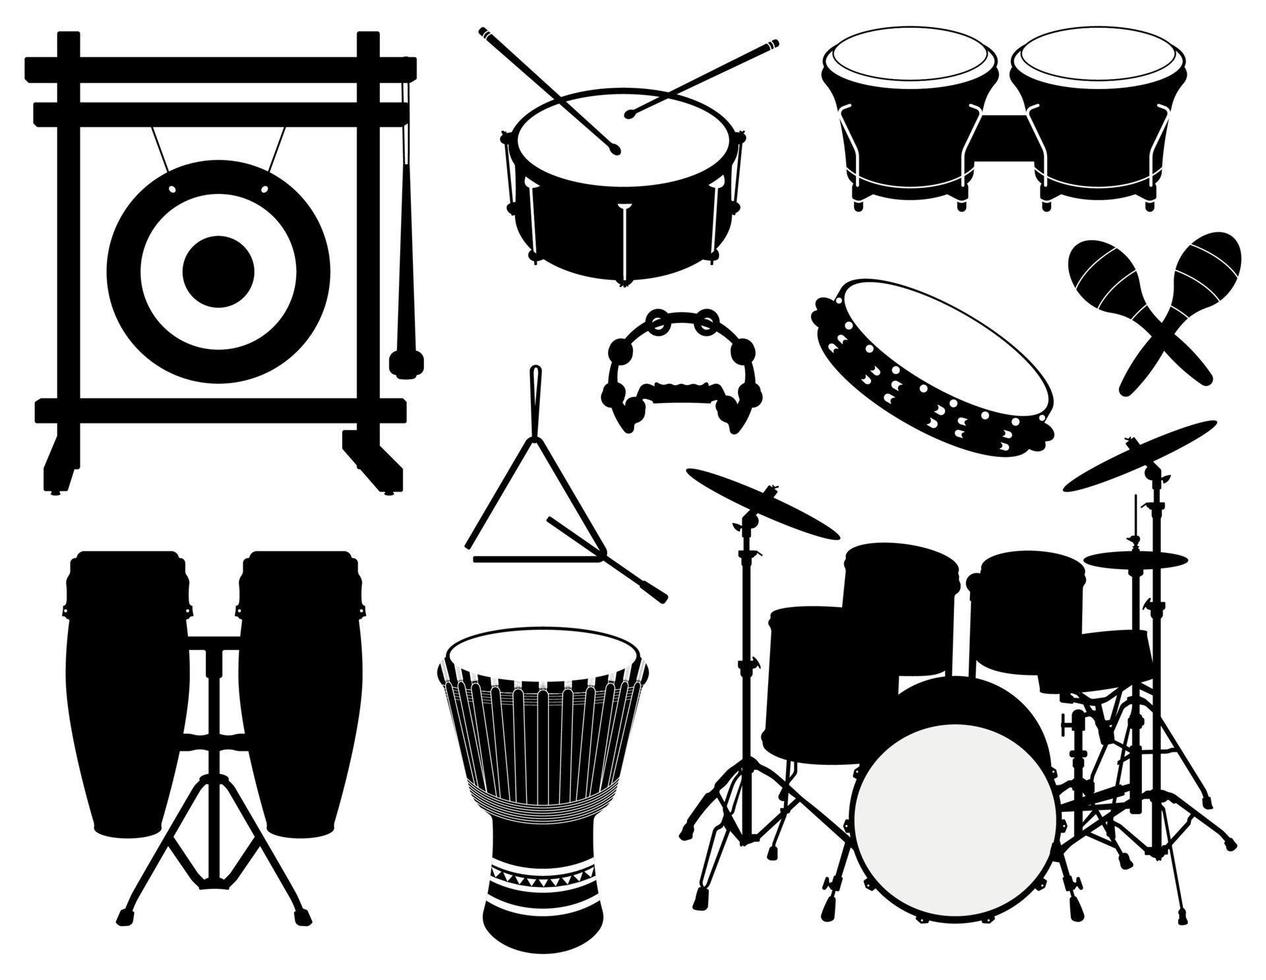 reeks van percussie musical instrumenten silhouetten, trommels, gong, tamboerijn, driehoek en maracas illustraties vector